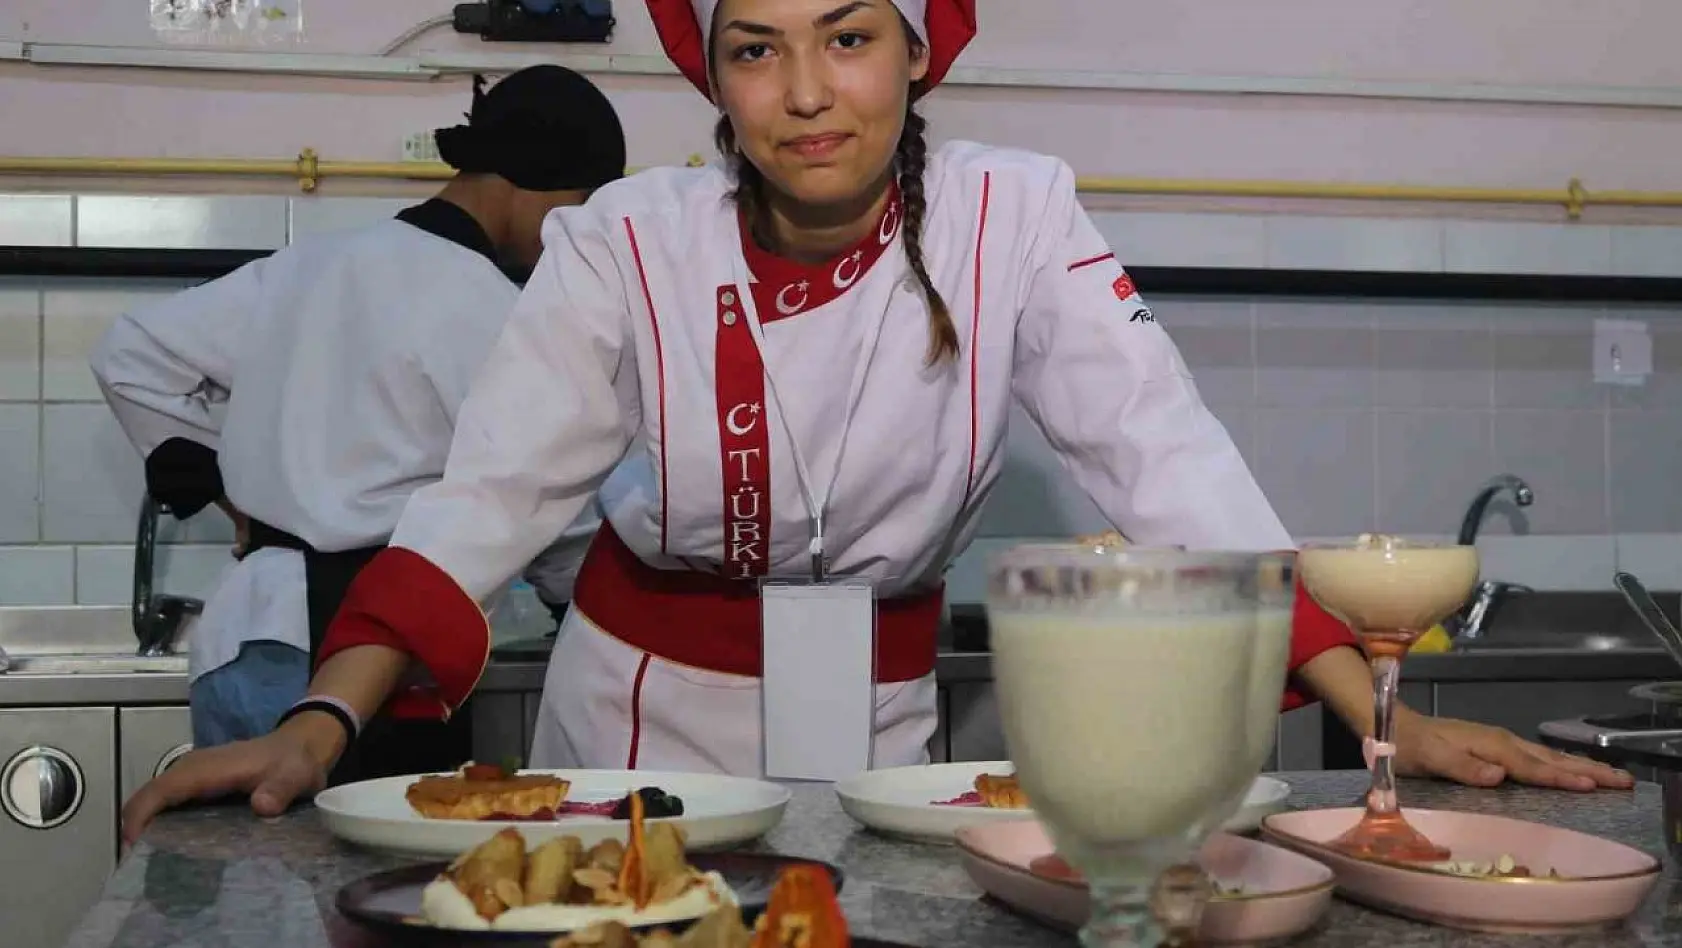 İzmir'de lise öğrencileri yemek yarışmasında hünerlerini sergiledi